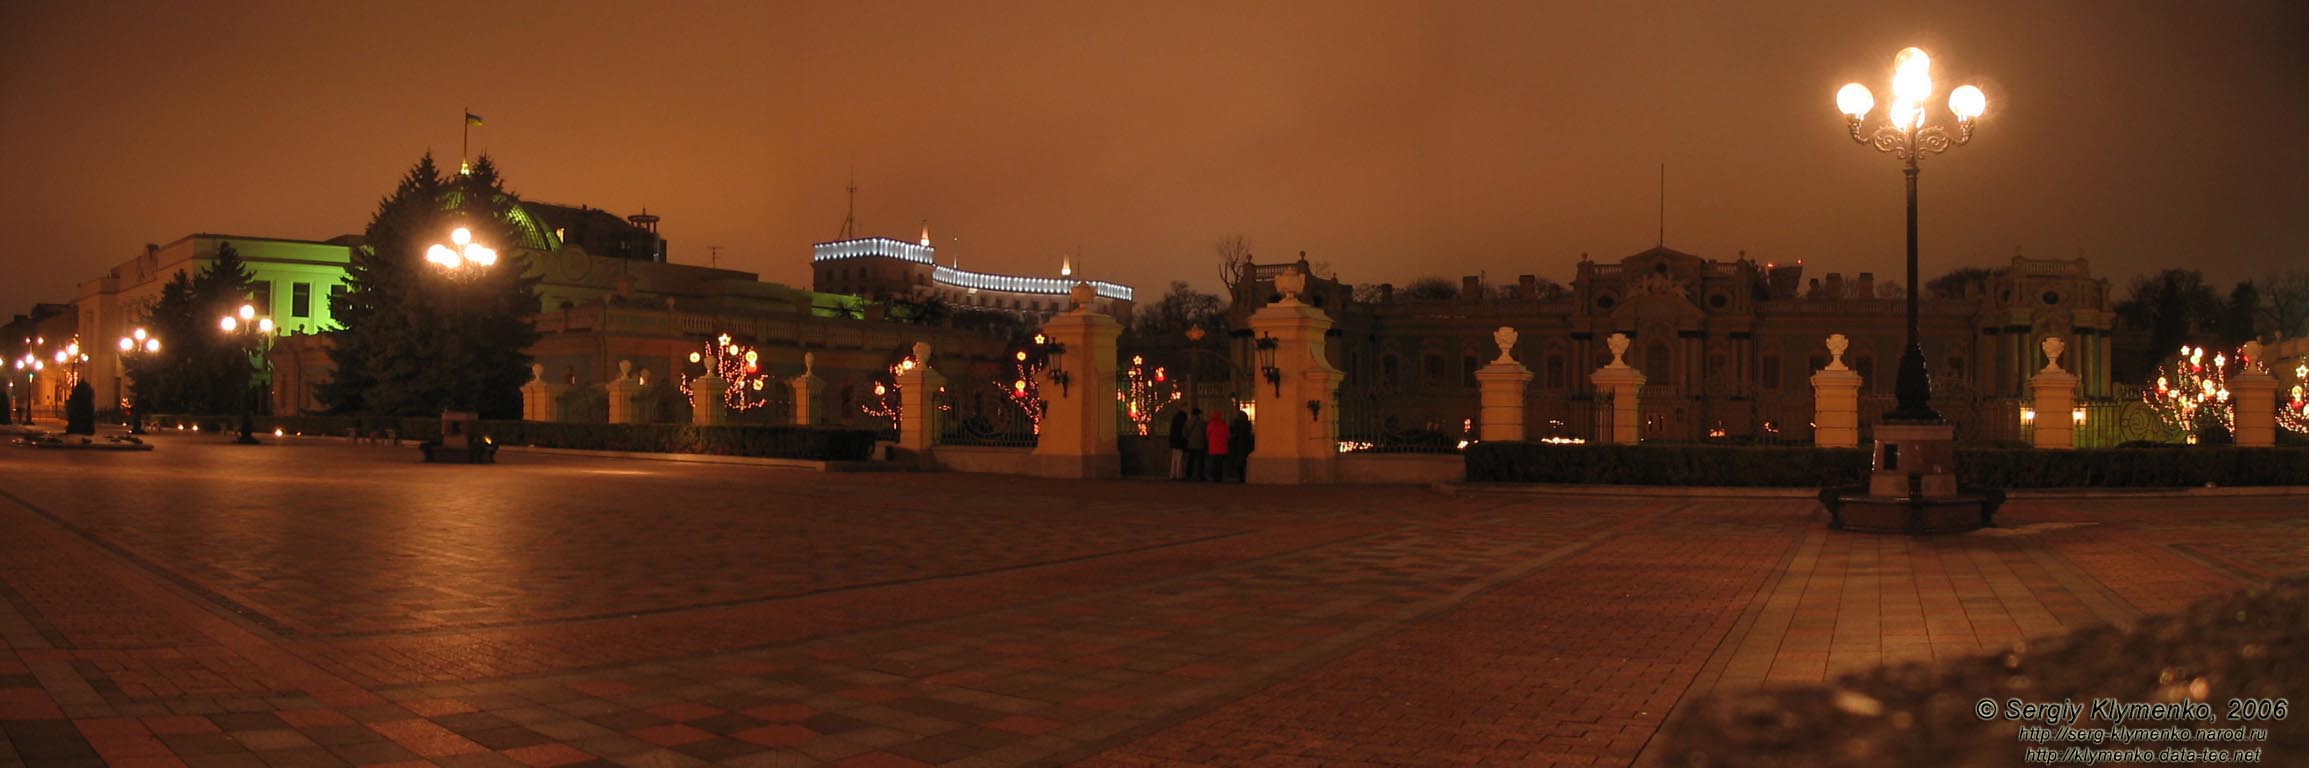 Фото Киева. Площадь Конституции, Мариинский дворец и здание Верховного Совета Украины. Вечер 2 января 2006 года.